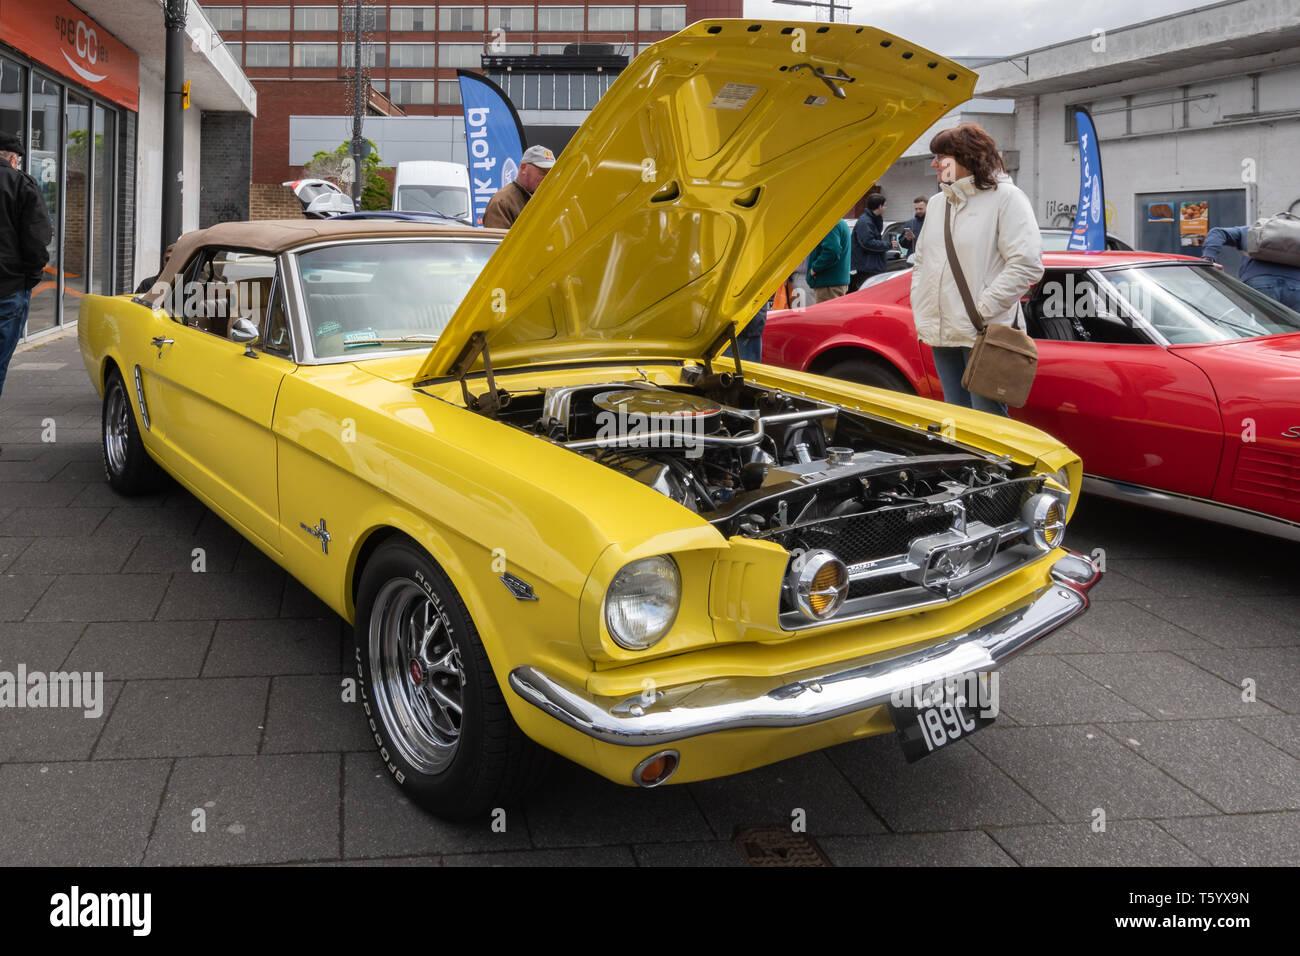 Gelb 1965 Ford Mustang 4700 cc Auto an einem Classic Motor Fahrzeug zeigen in Großbritannien. American Automobile mit Kapuze oder Motorhaube öffnen, Motor. Stockfoto